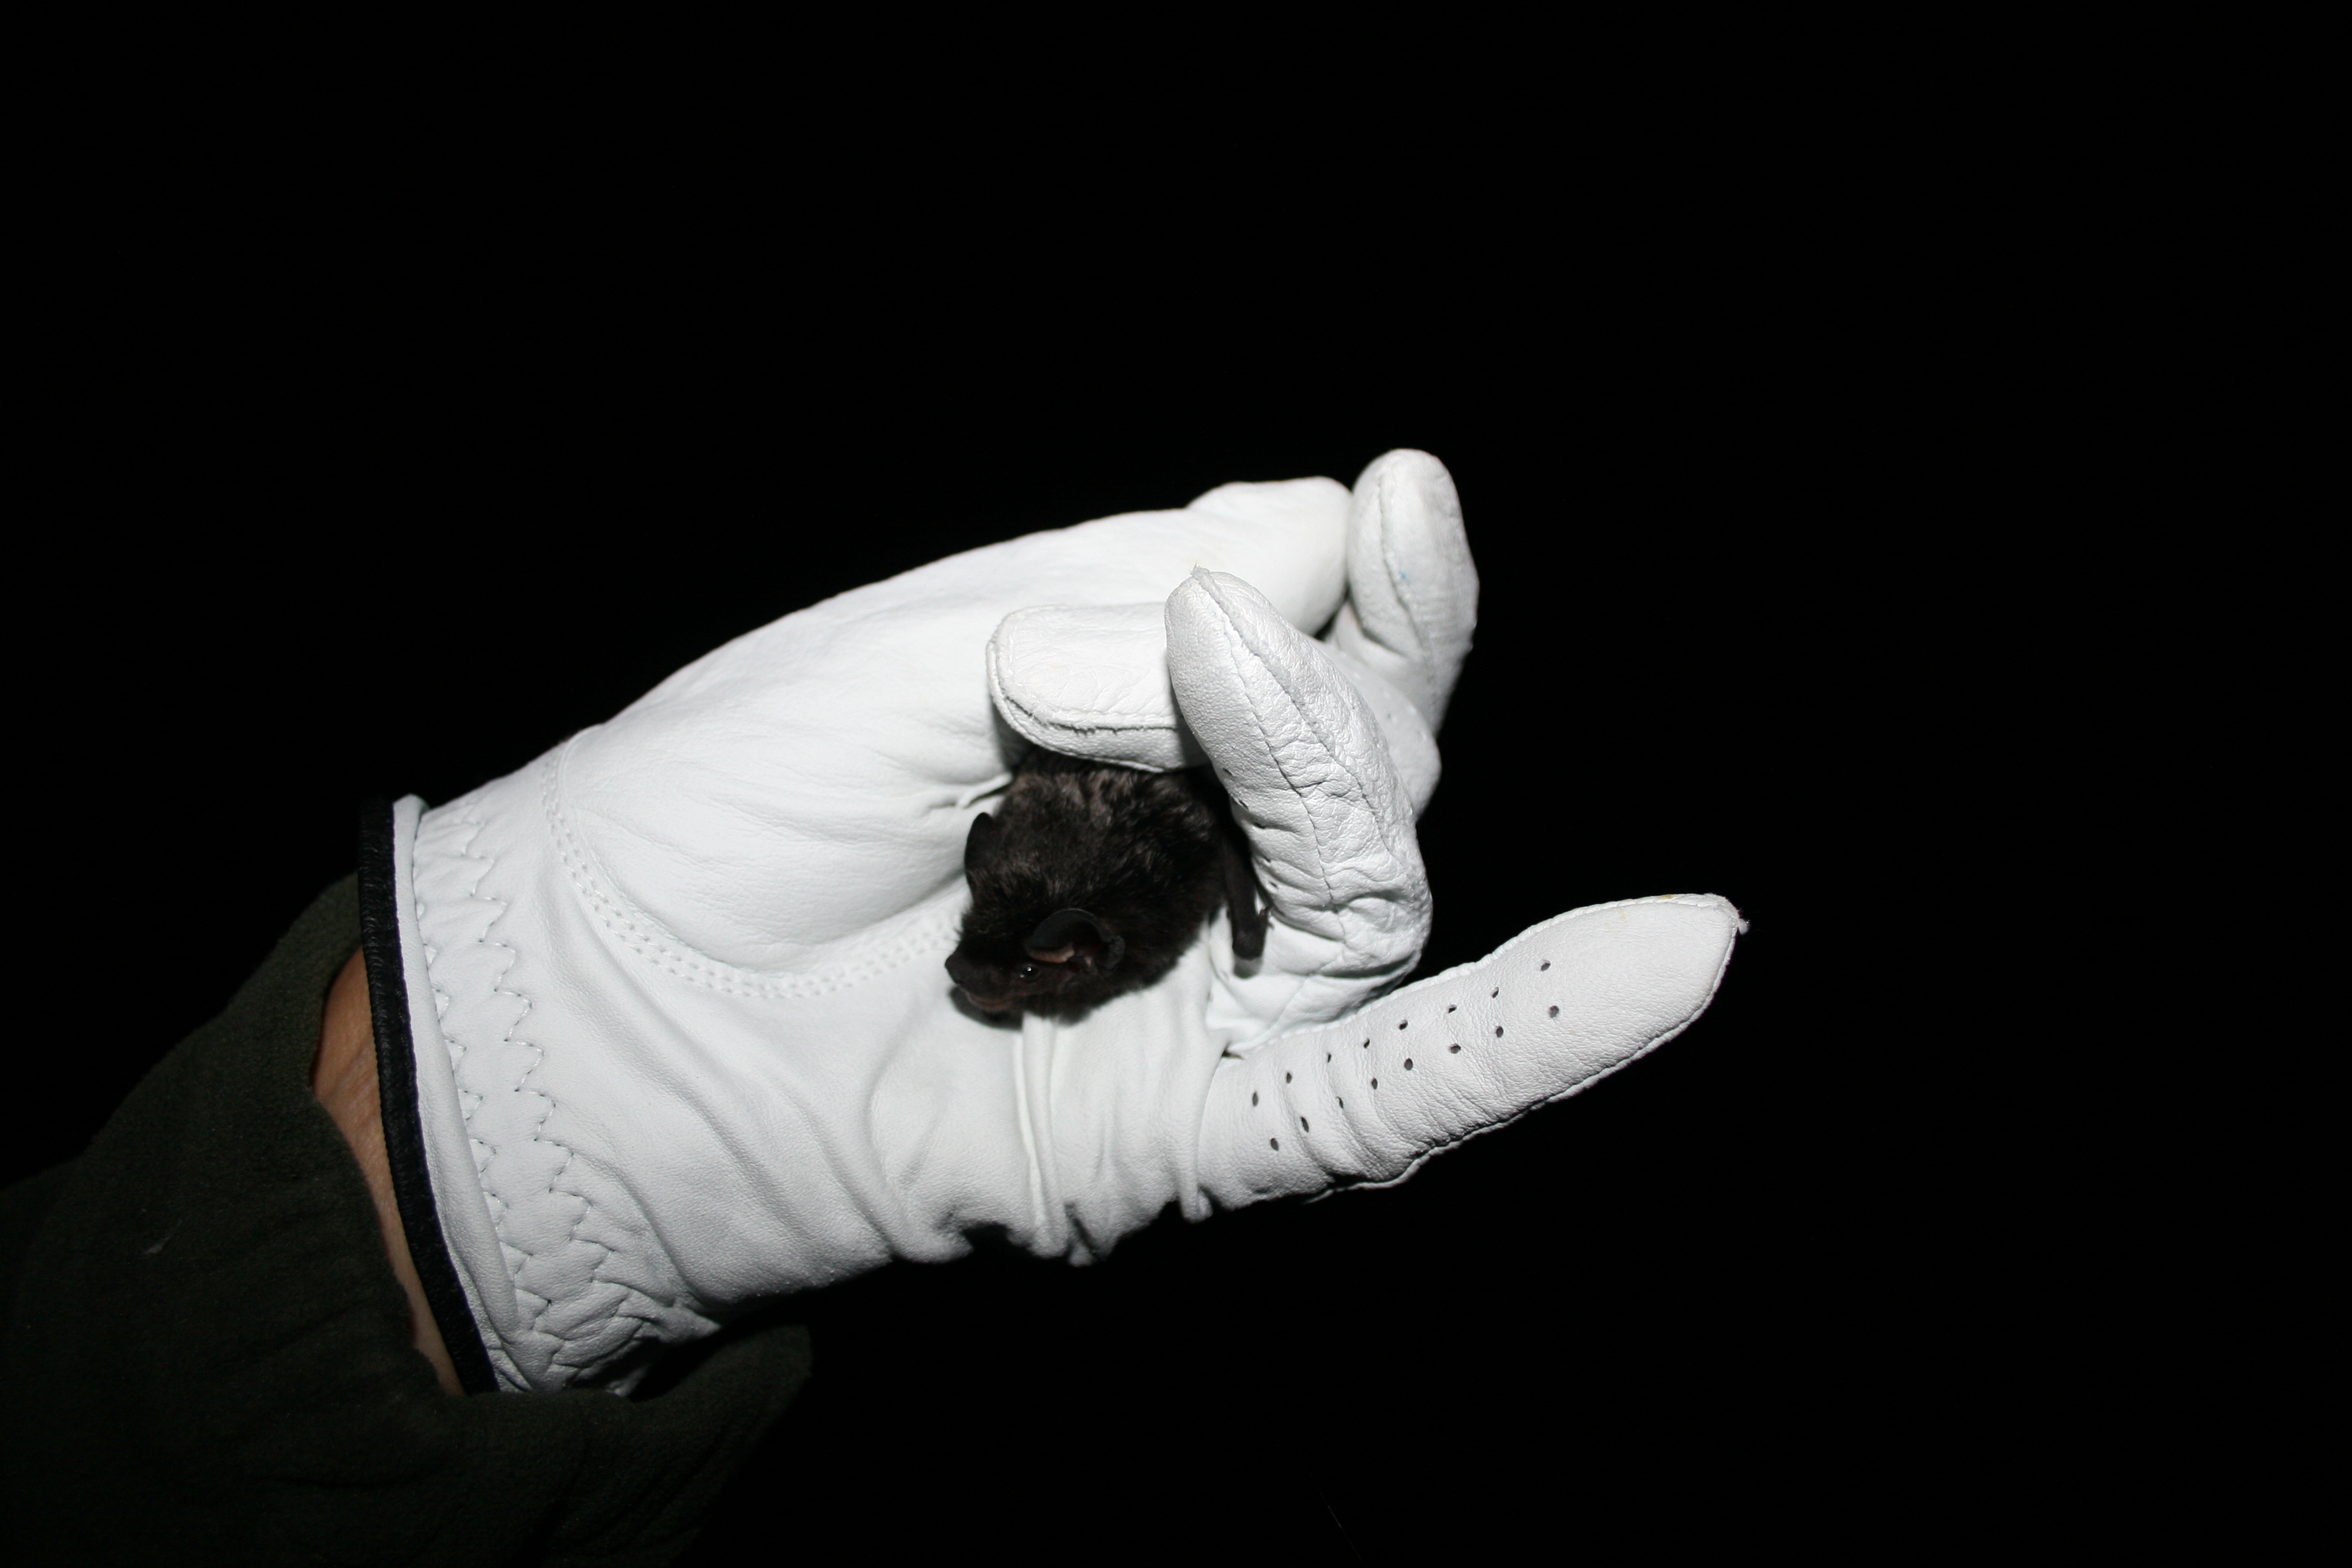 Always wear gloves when handling a bat.